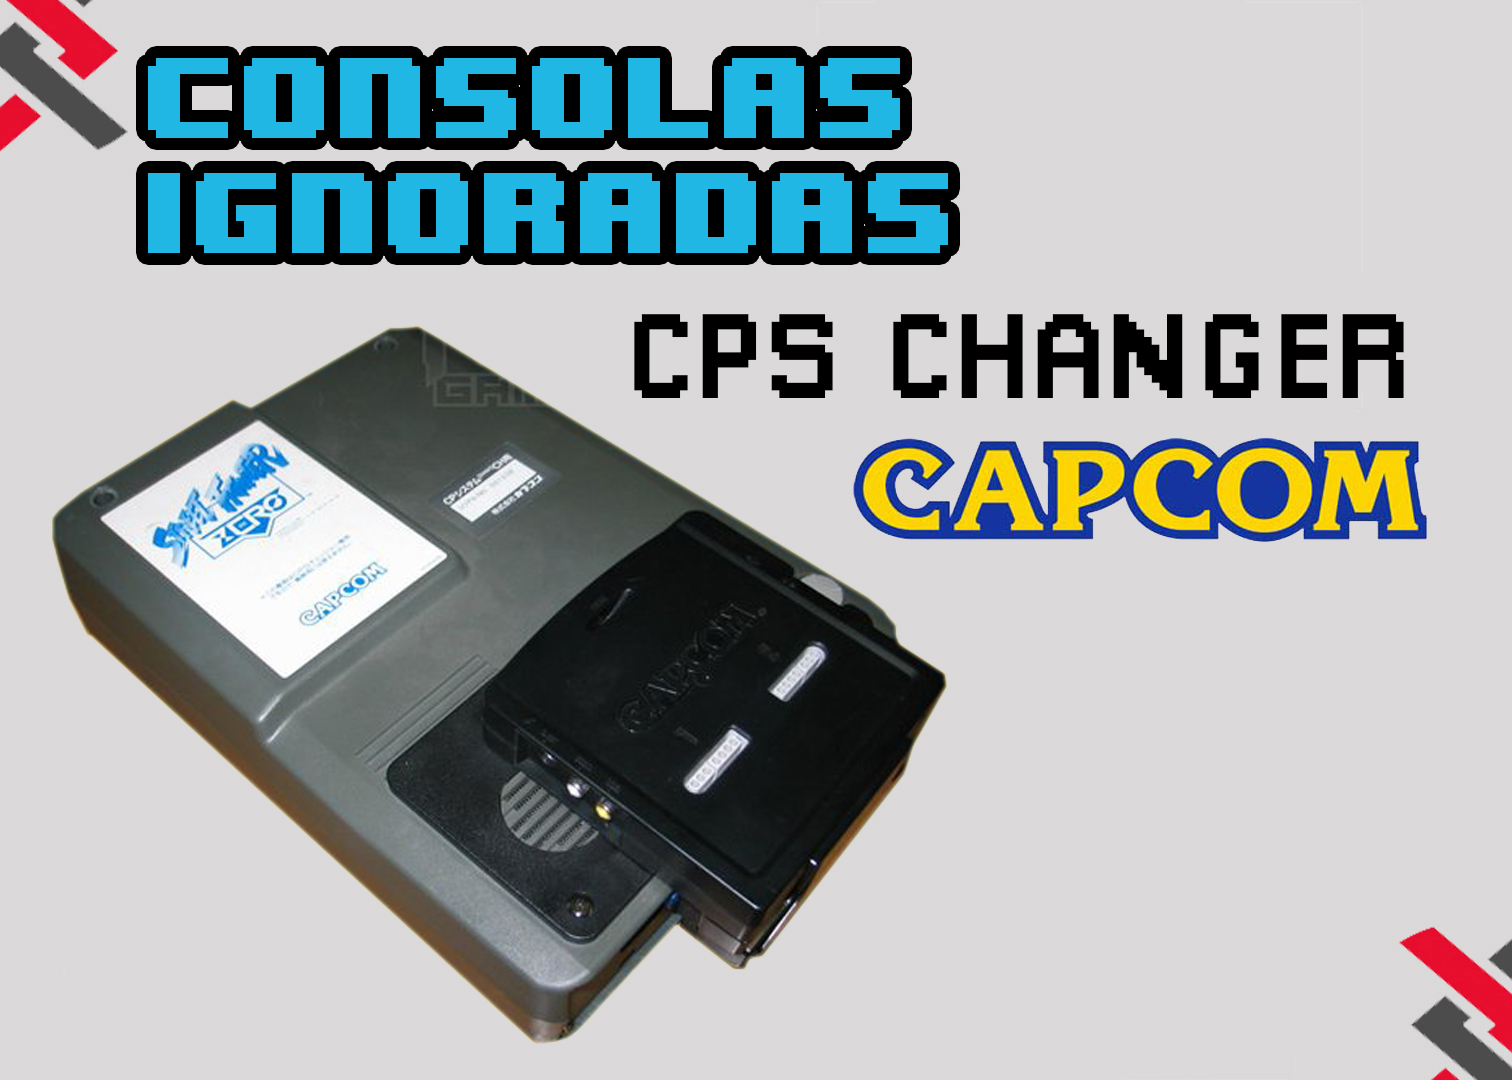 cps_changer_capcom